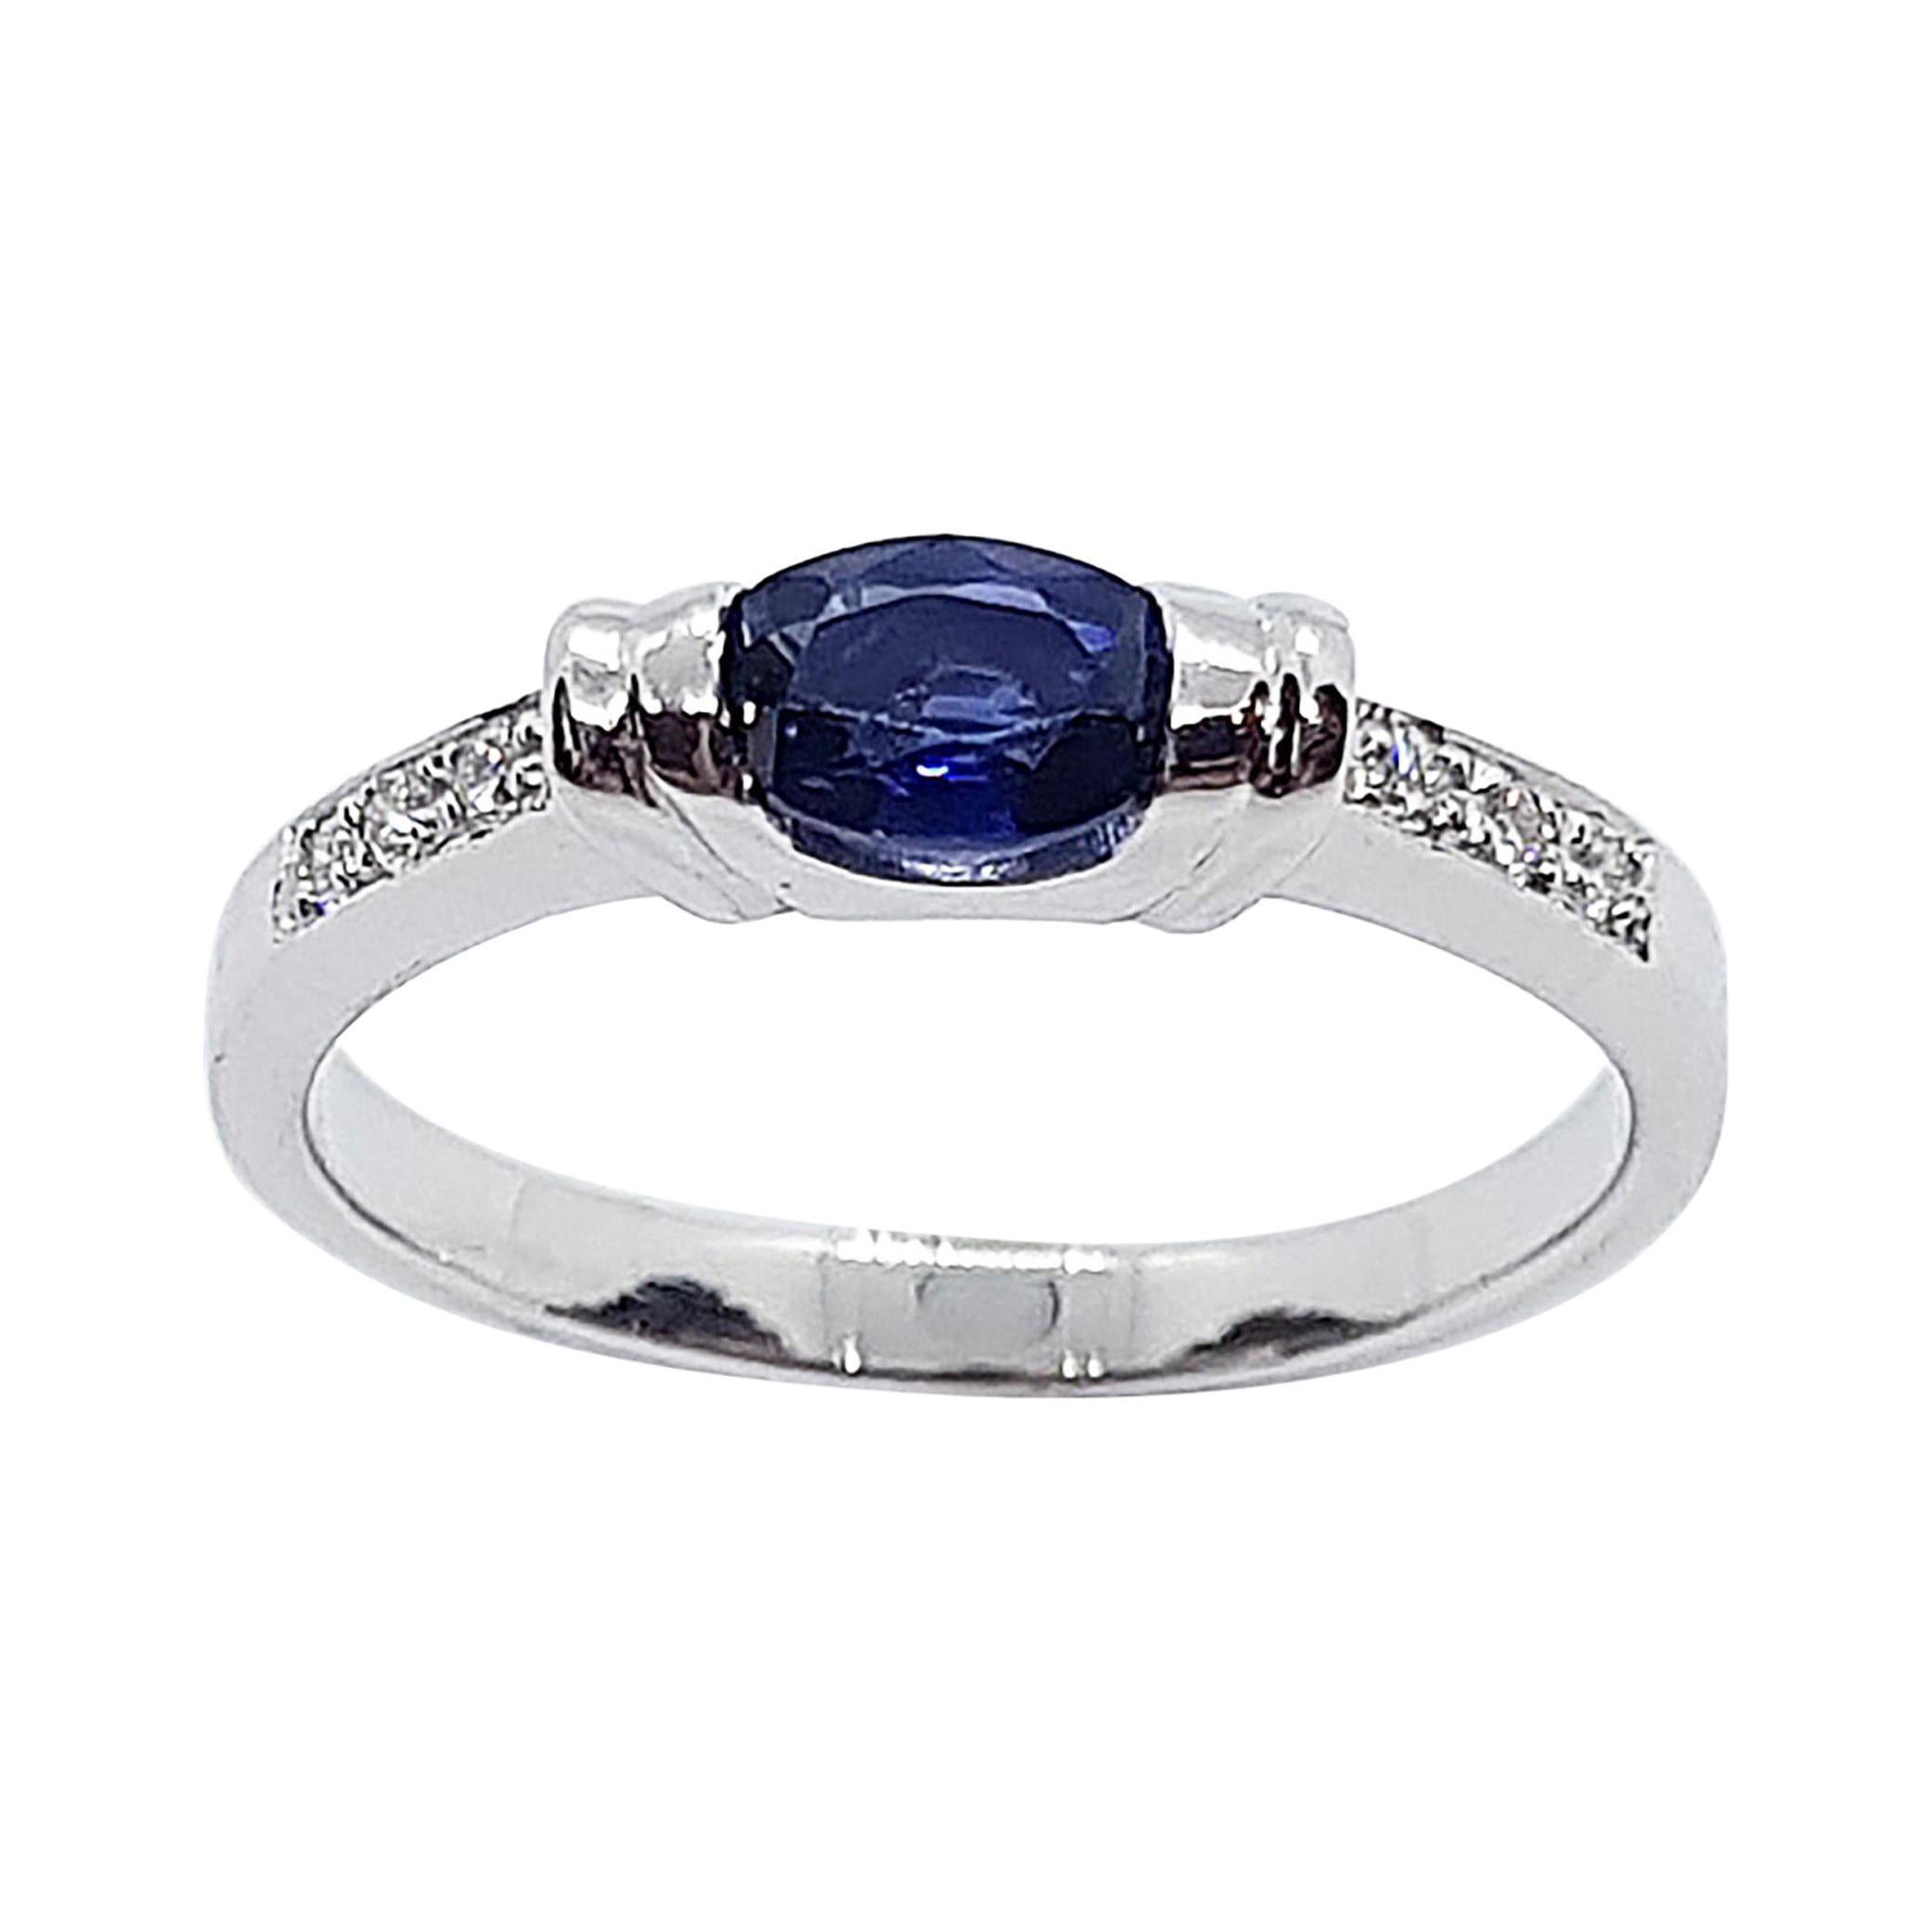 Blue Sapphire 0.52 Carat with Diamond 0.07 Carat Ring Set in 18 Karat White Gold